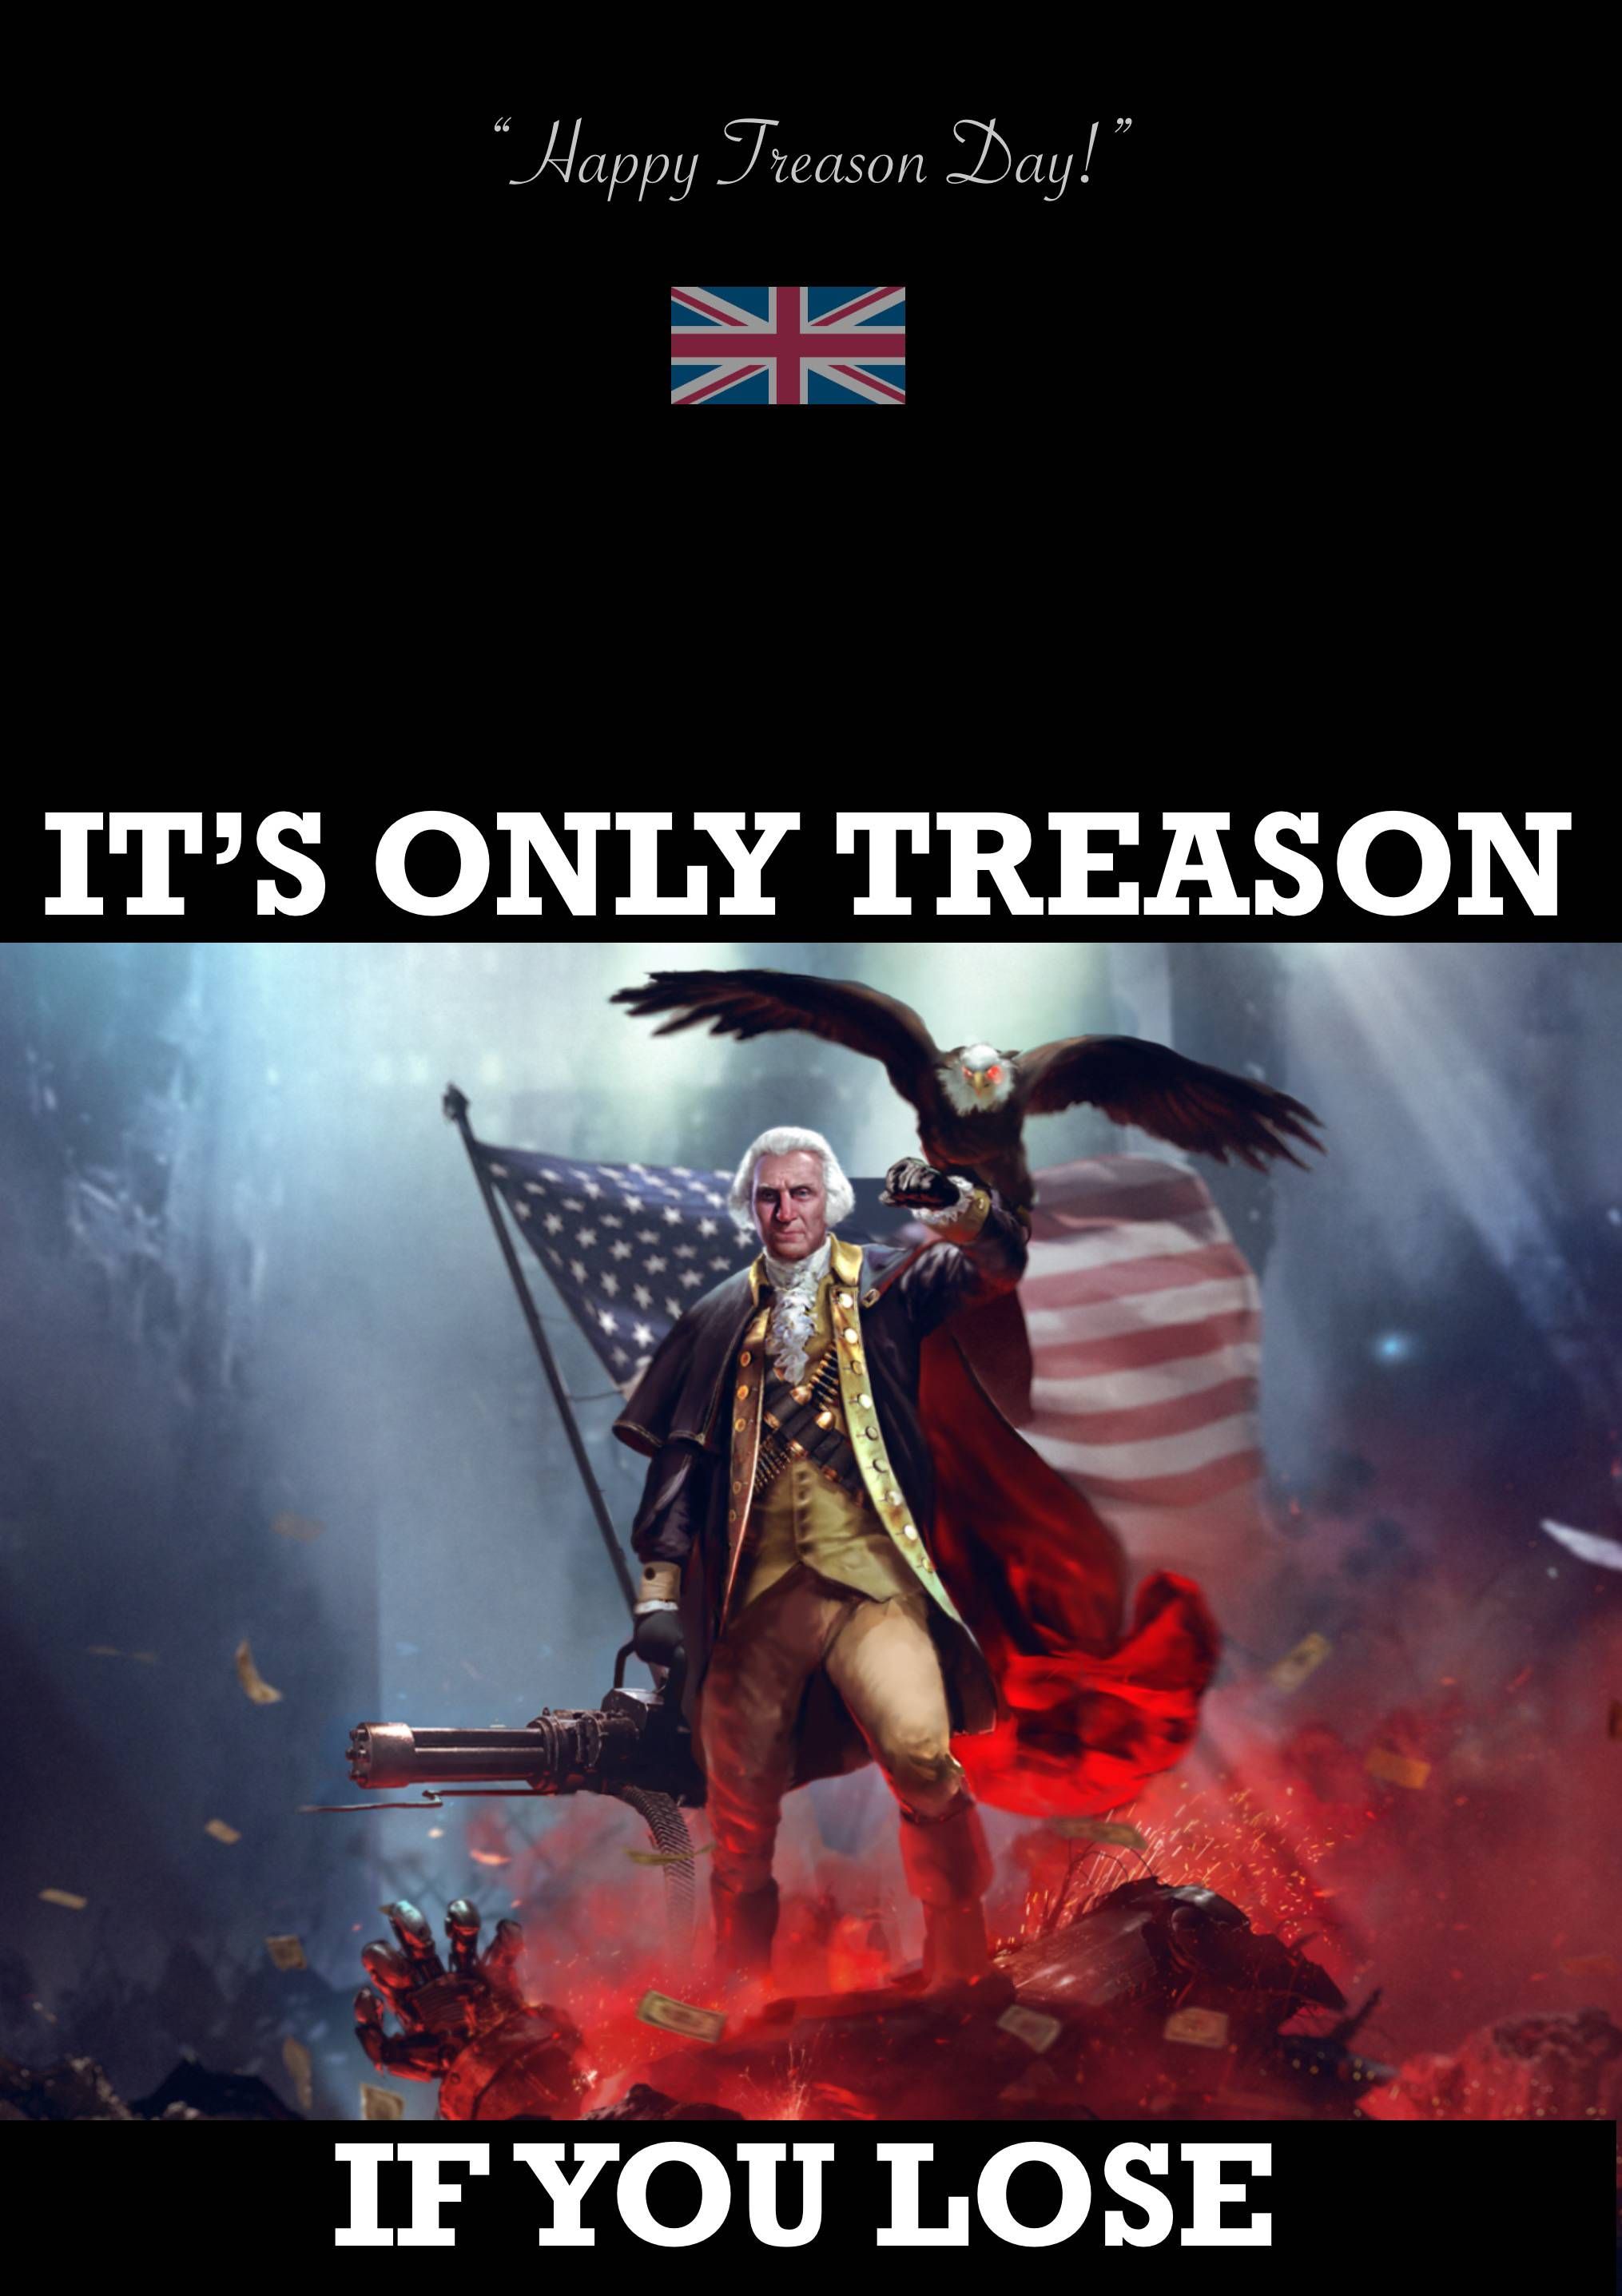 Treason Day